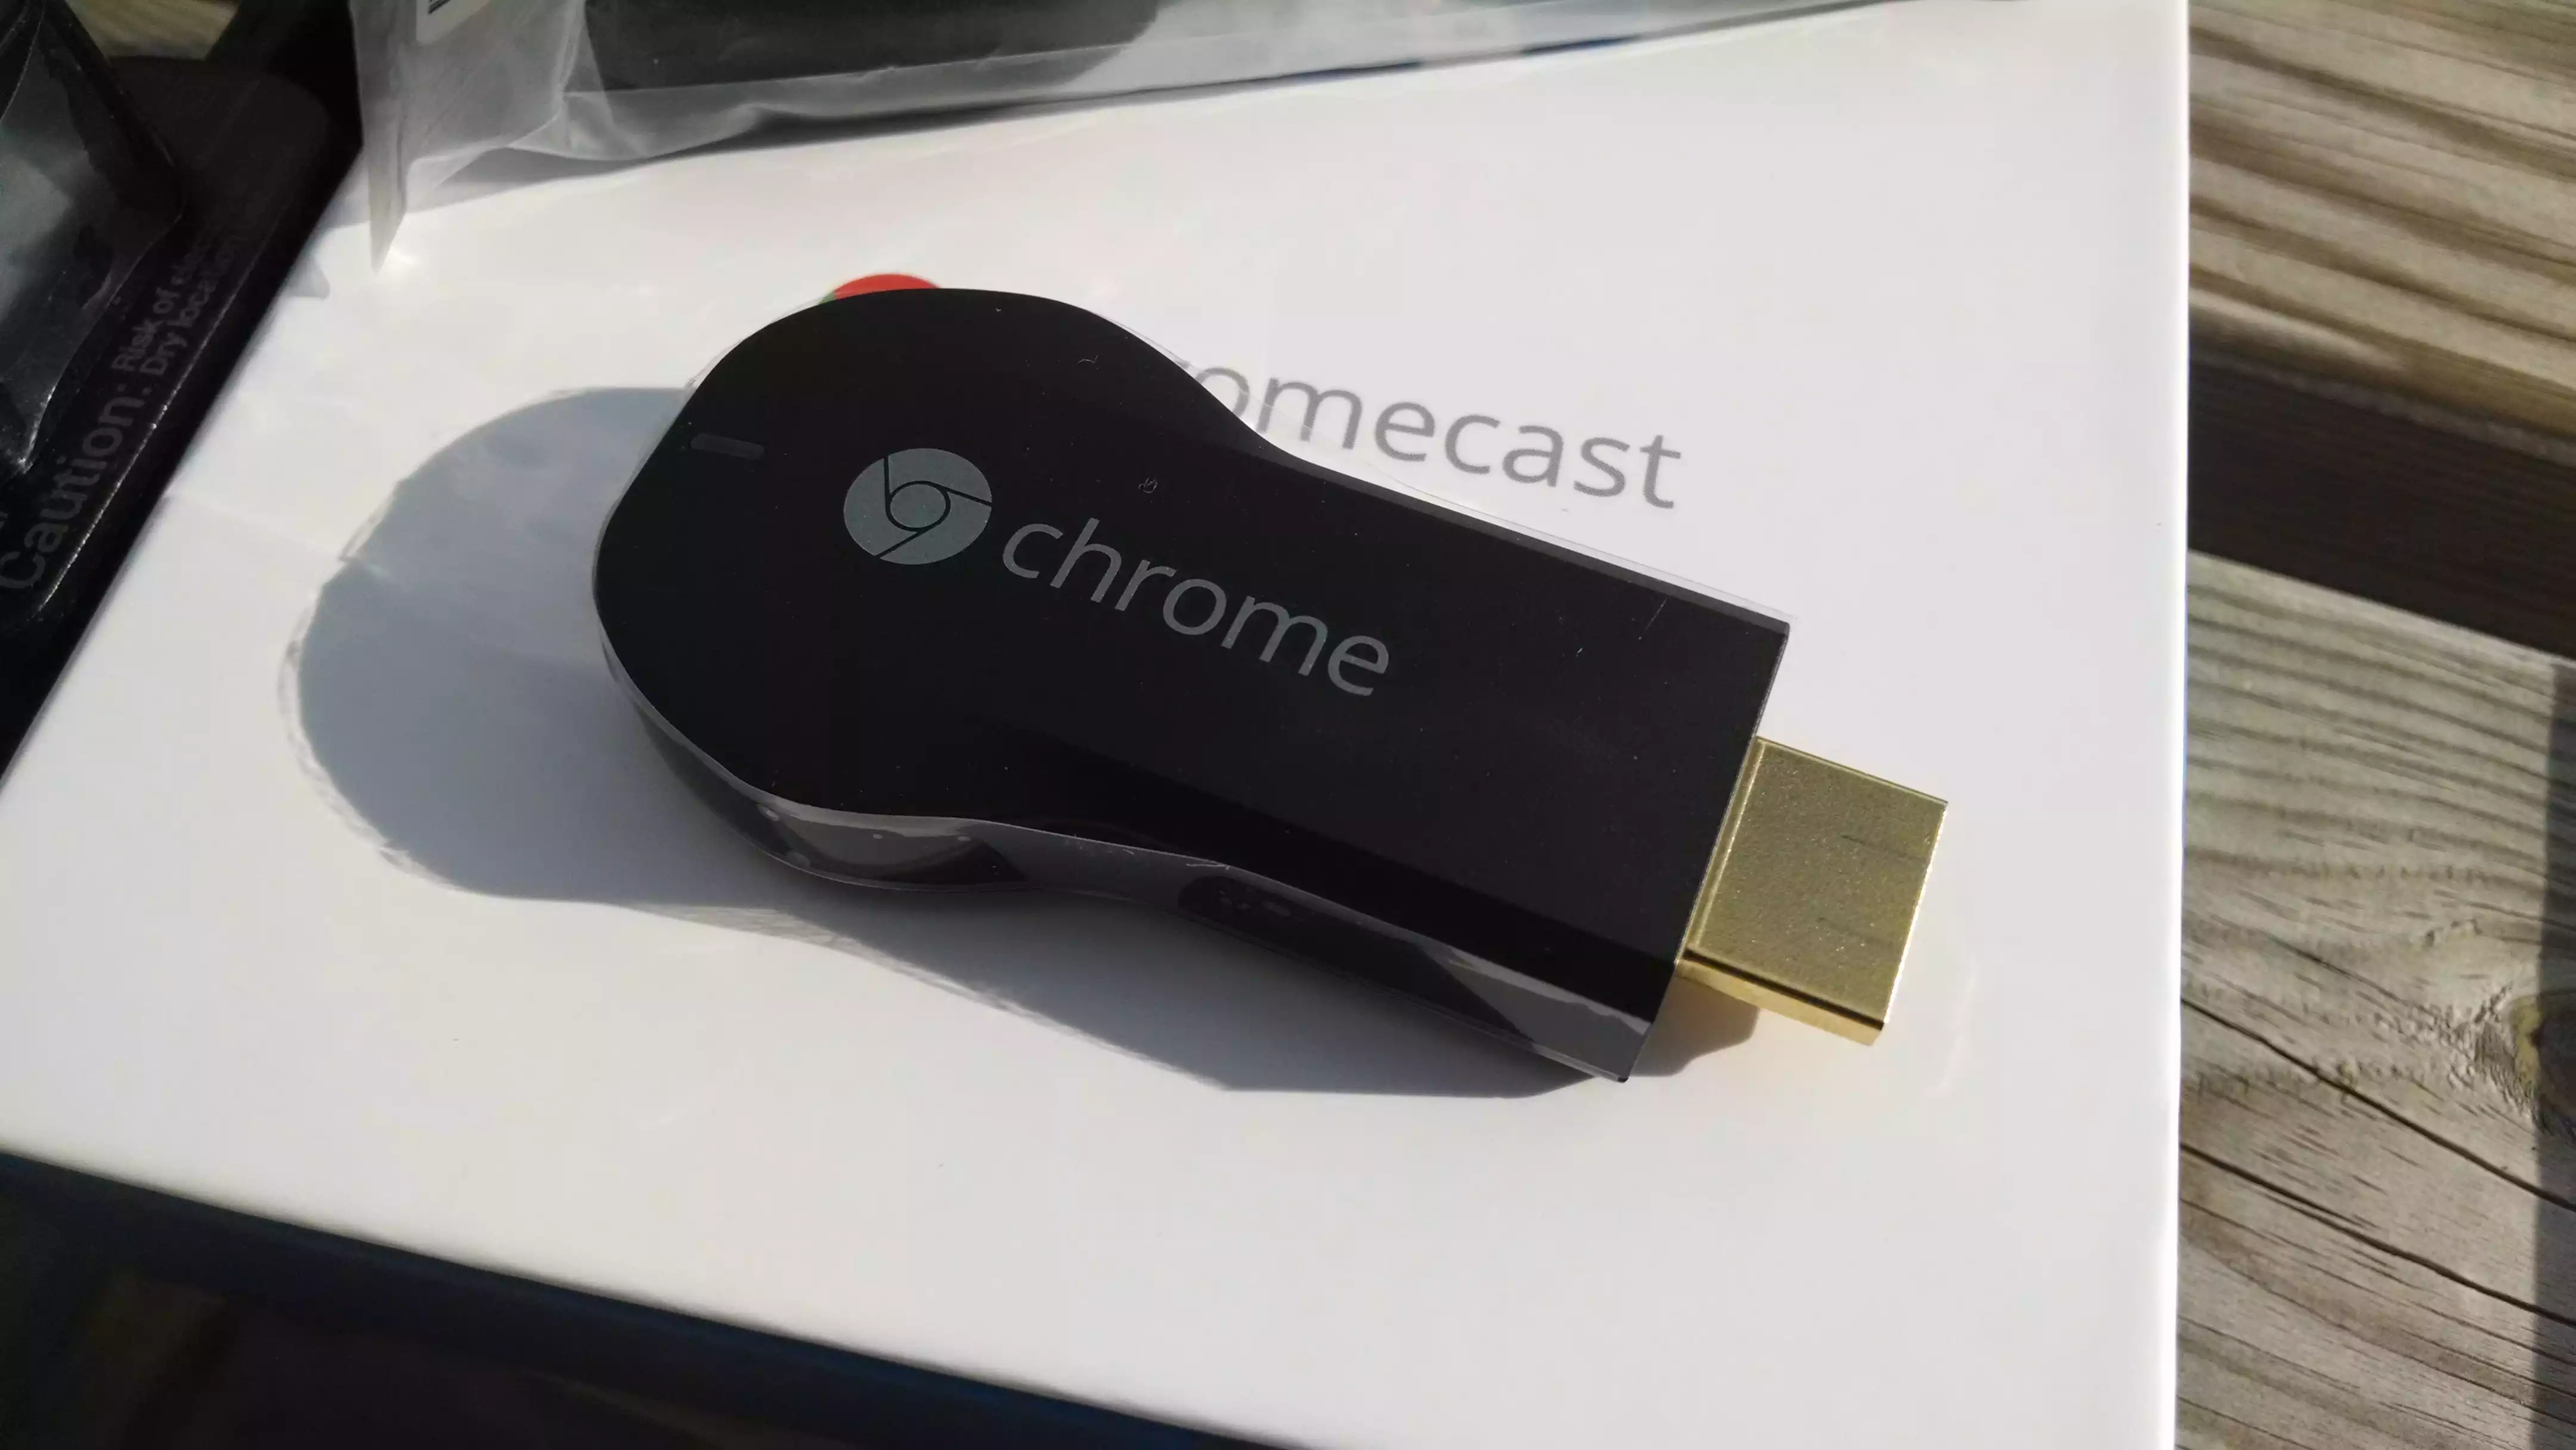 Assistance SFR on X: Connaissez-vous le Chromecast, un petit